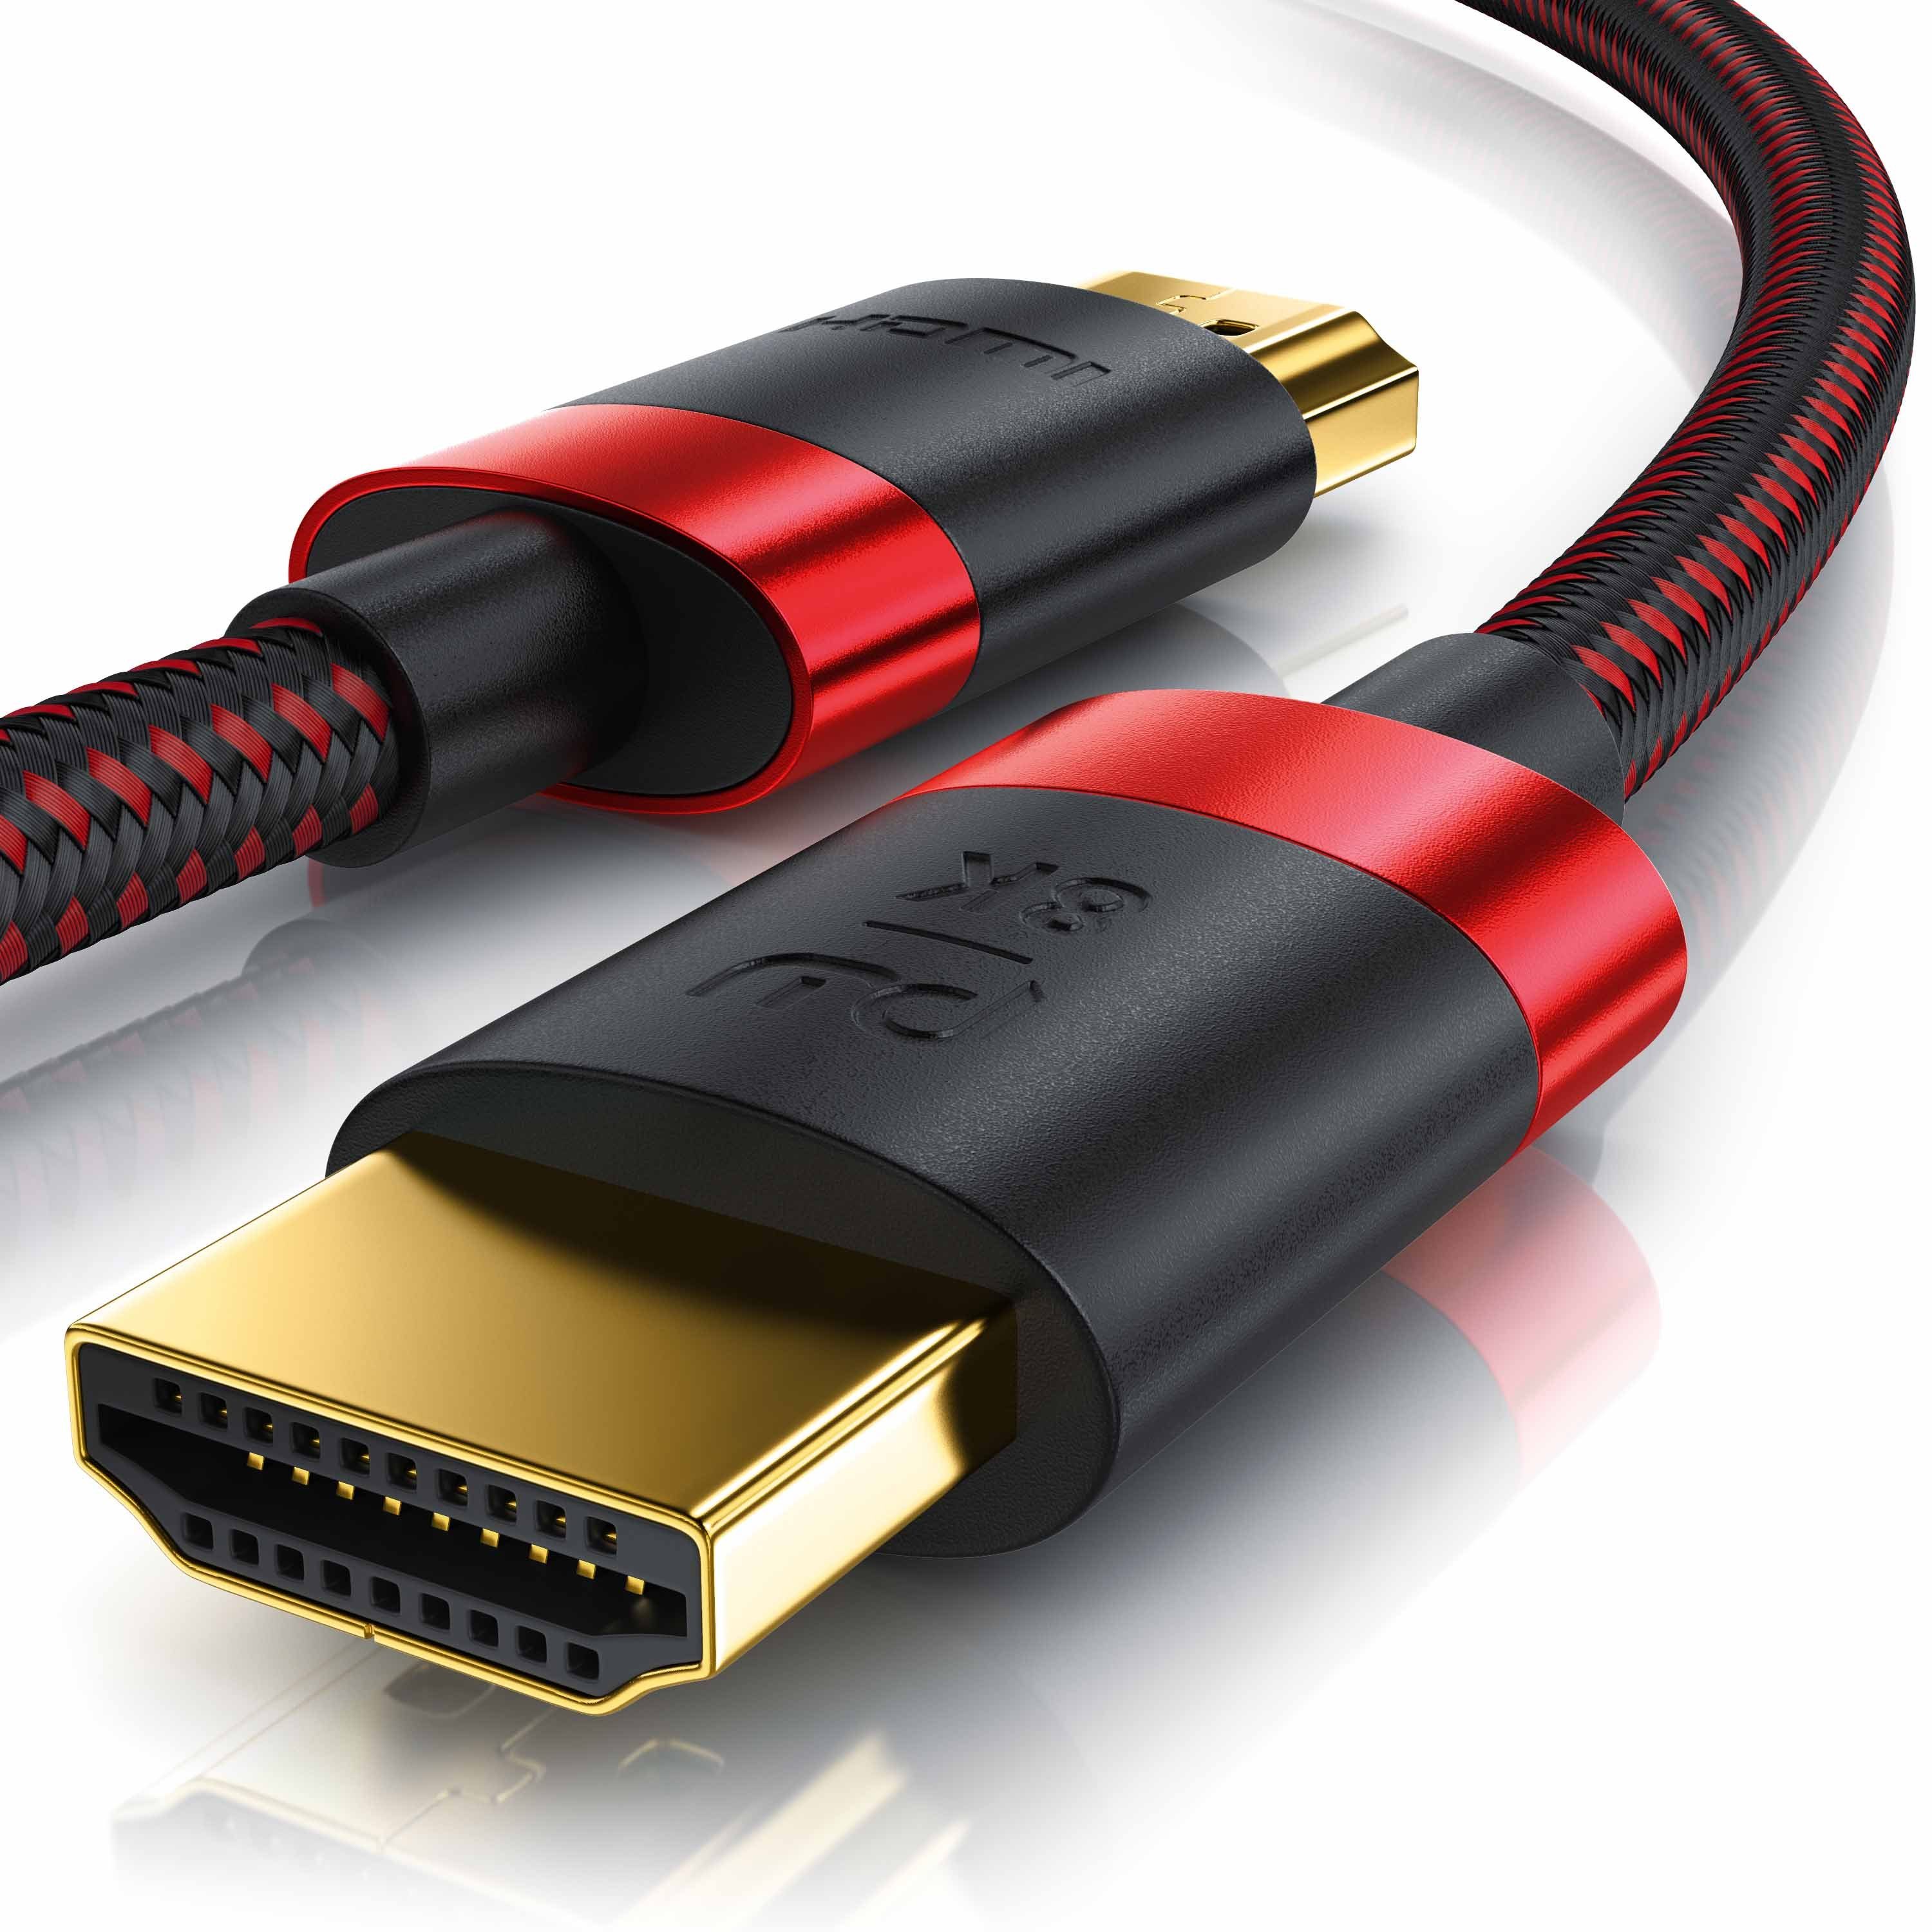 Primewire HDMI-Kabel, HDMI Typ A, HDMI Typ A Stecker; HDMI Typ A Stecker  (50 cm), 8K Premium HDMI Ultra High Speed Kabel 2.1 mit Nylonummantelung  7680 x 4320 @ 120 Hz mit DSC online kaufen | OTTO